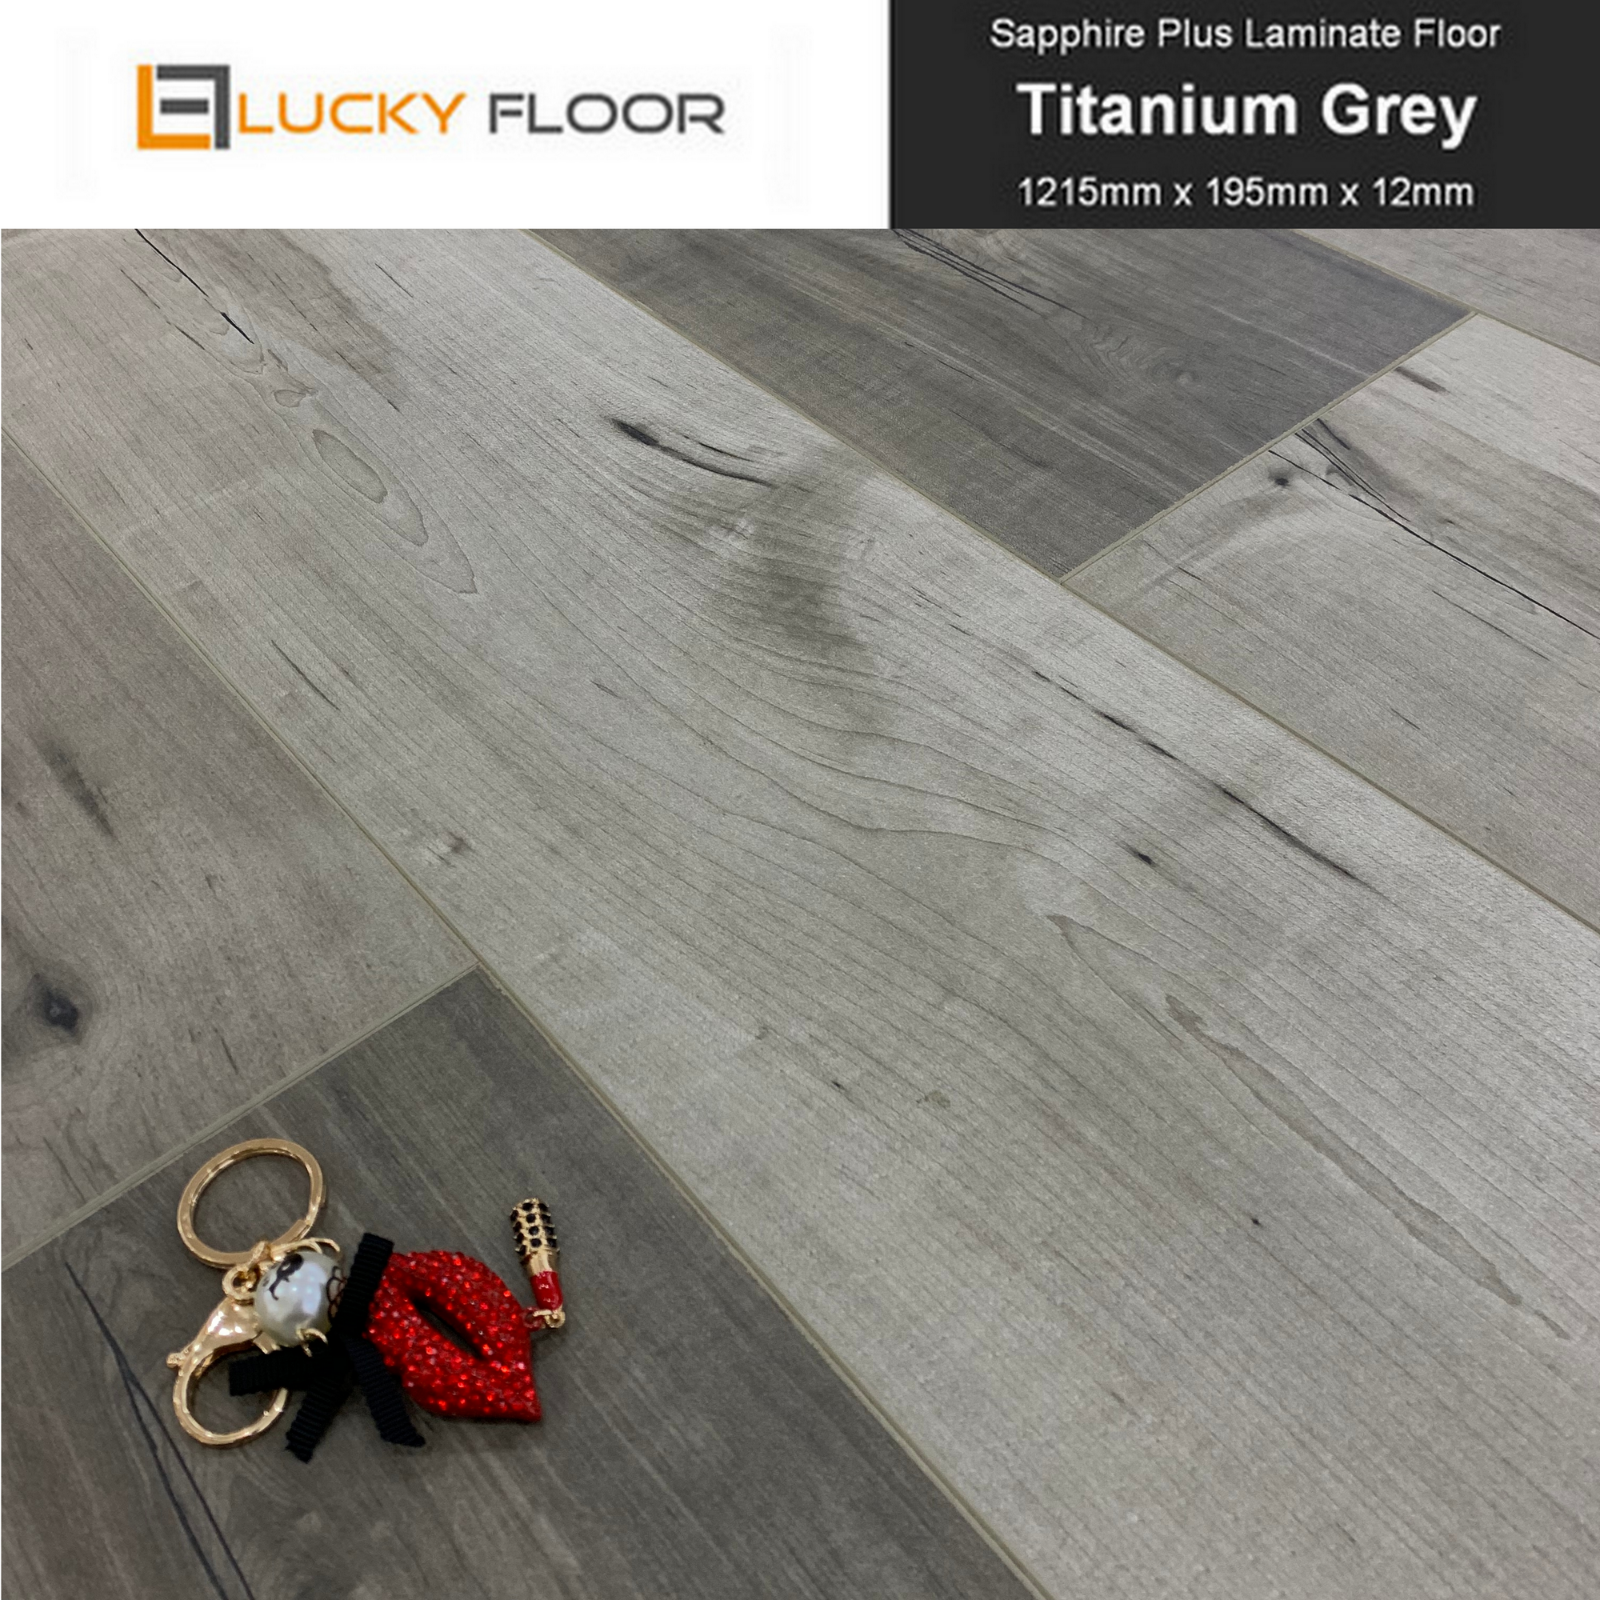 12mm Titanium Grey Laminate Flooring Floating Timber Floor